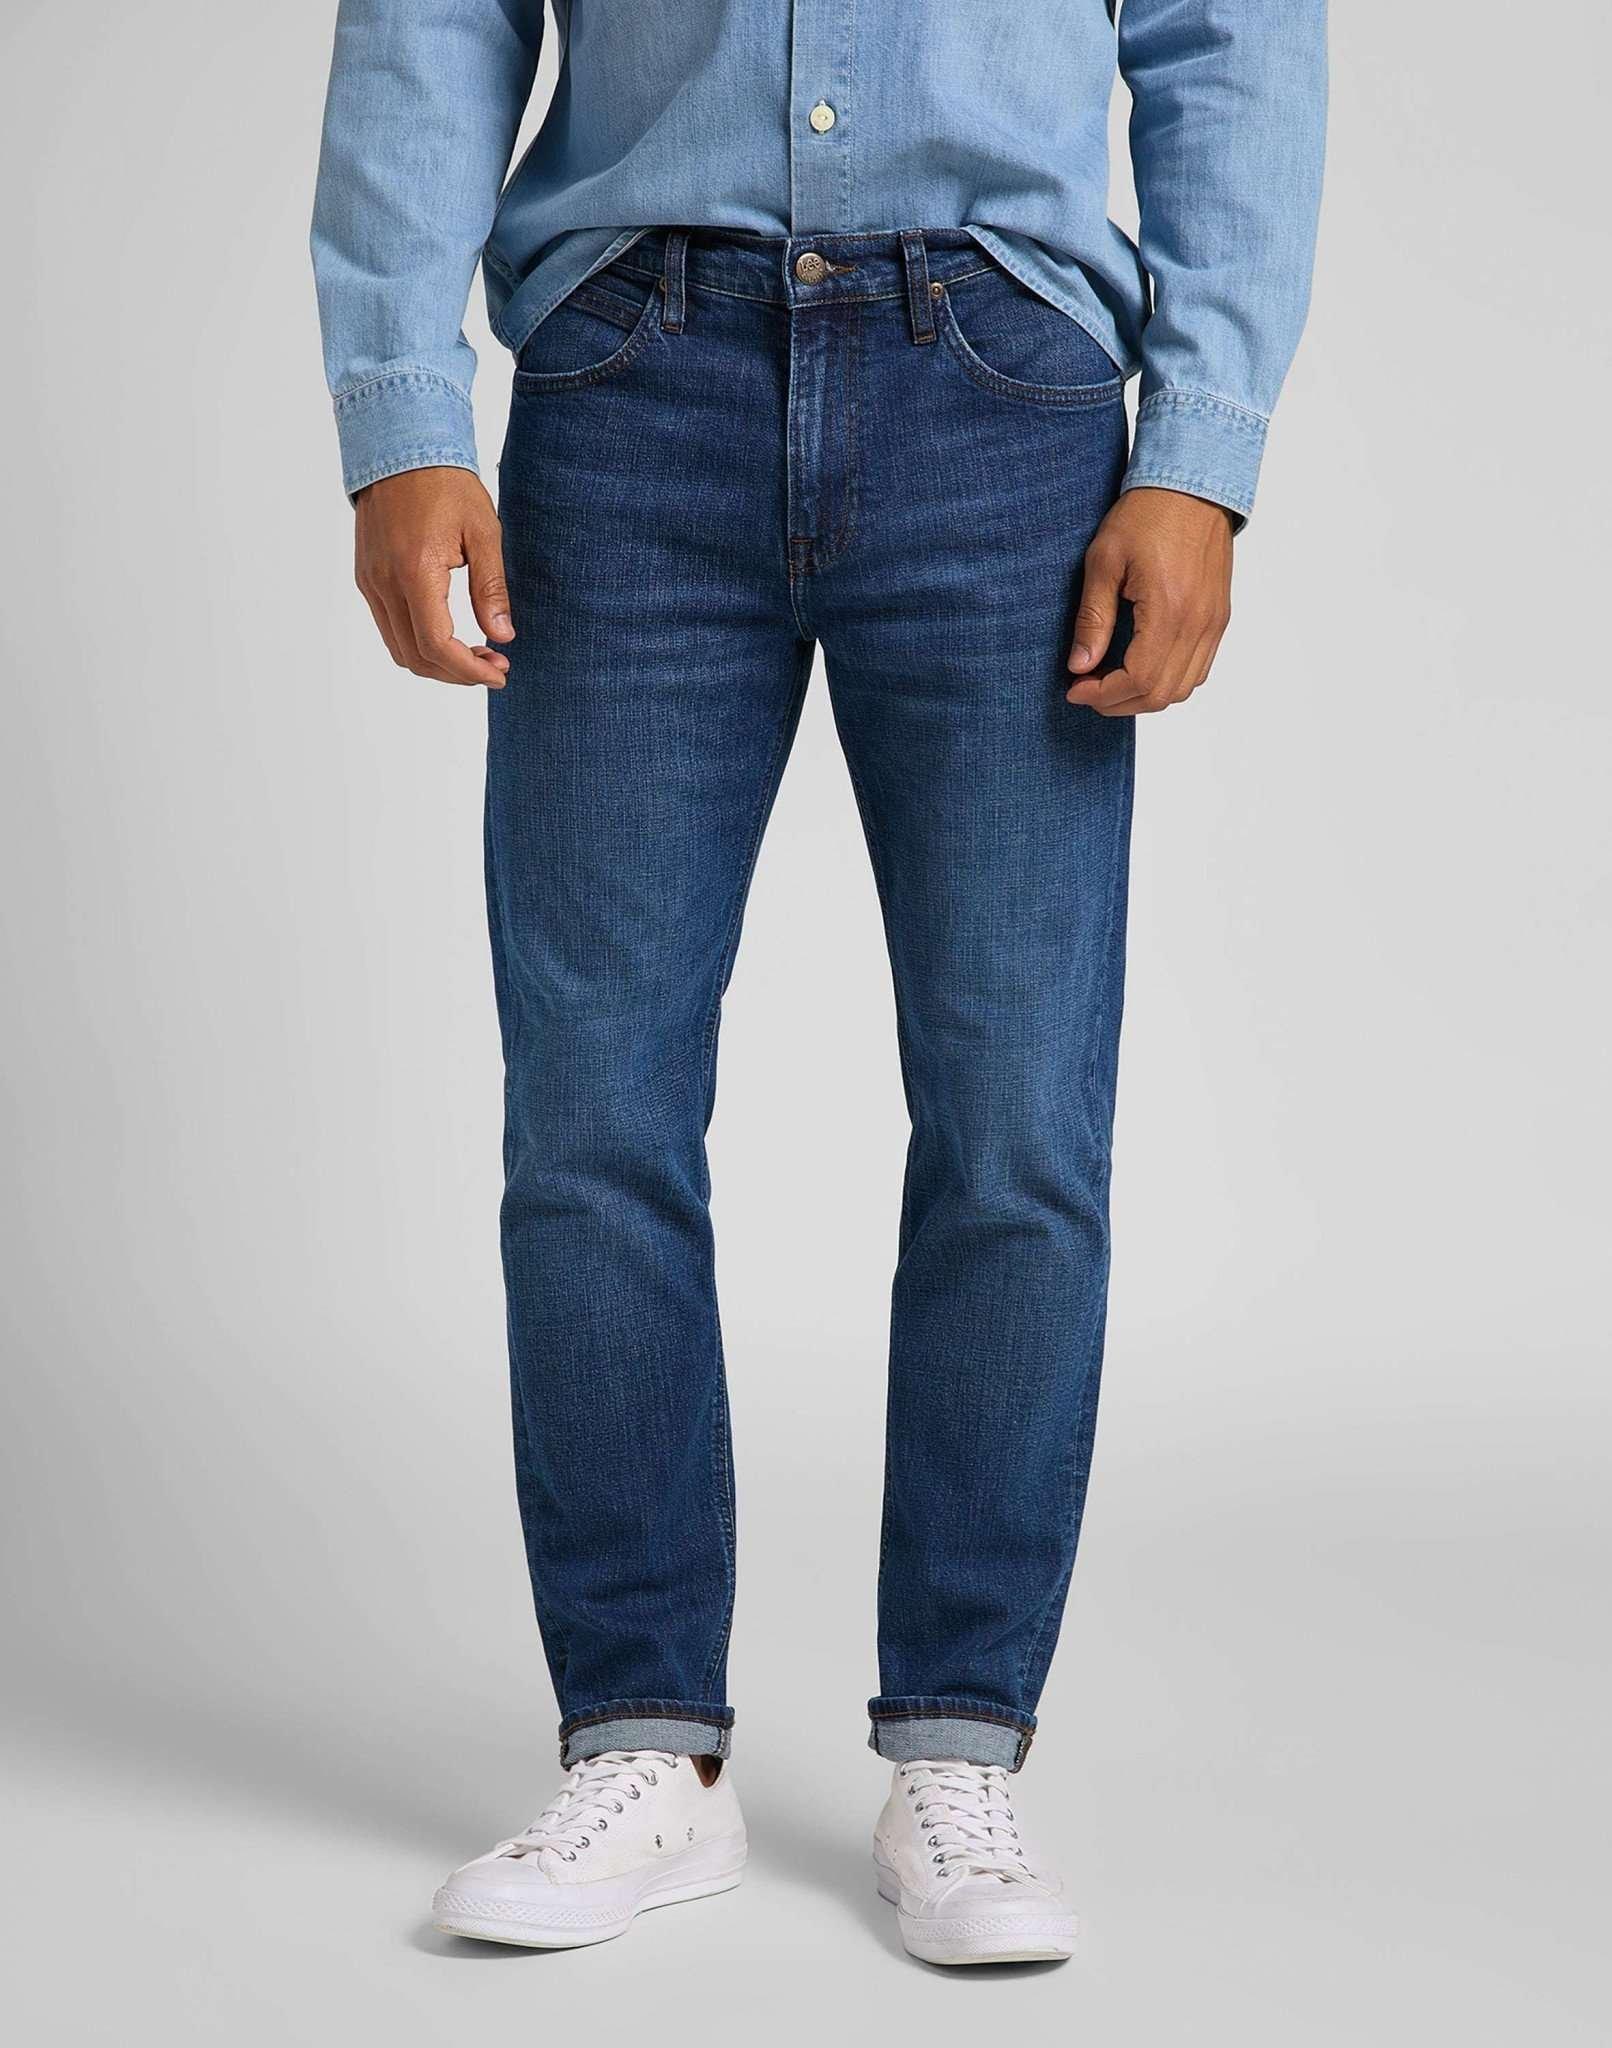 Jeans Straight Leg Austin Herren Blau Denim L34/W32 von Lee